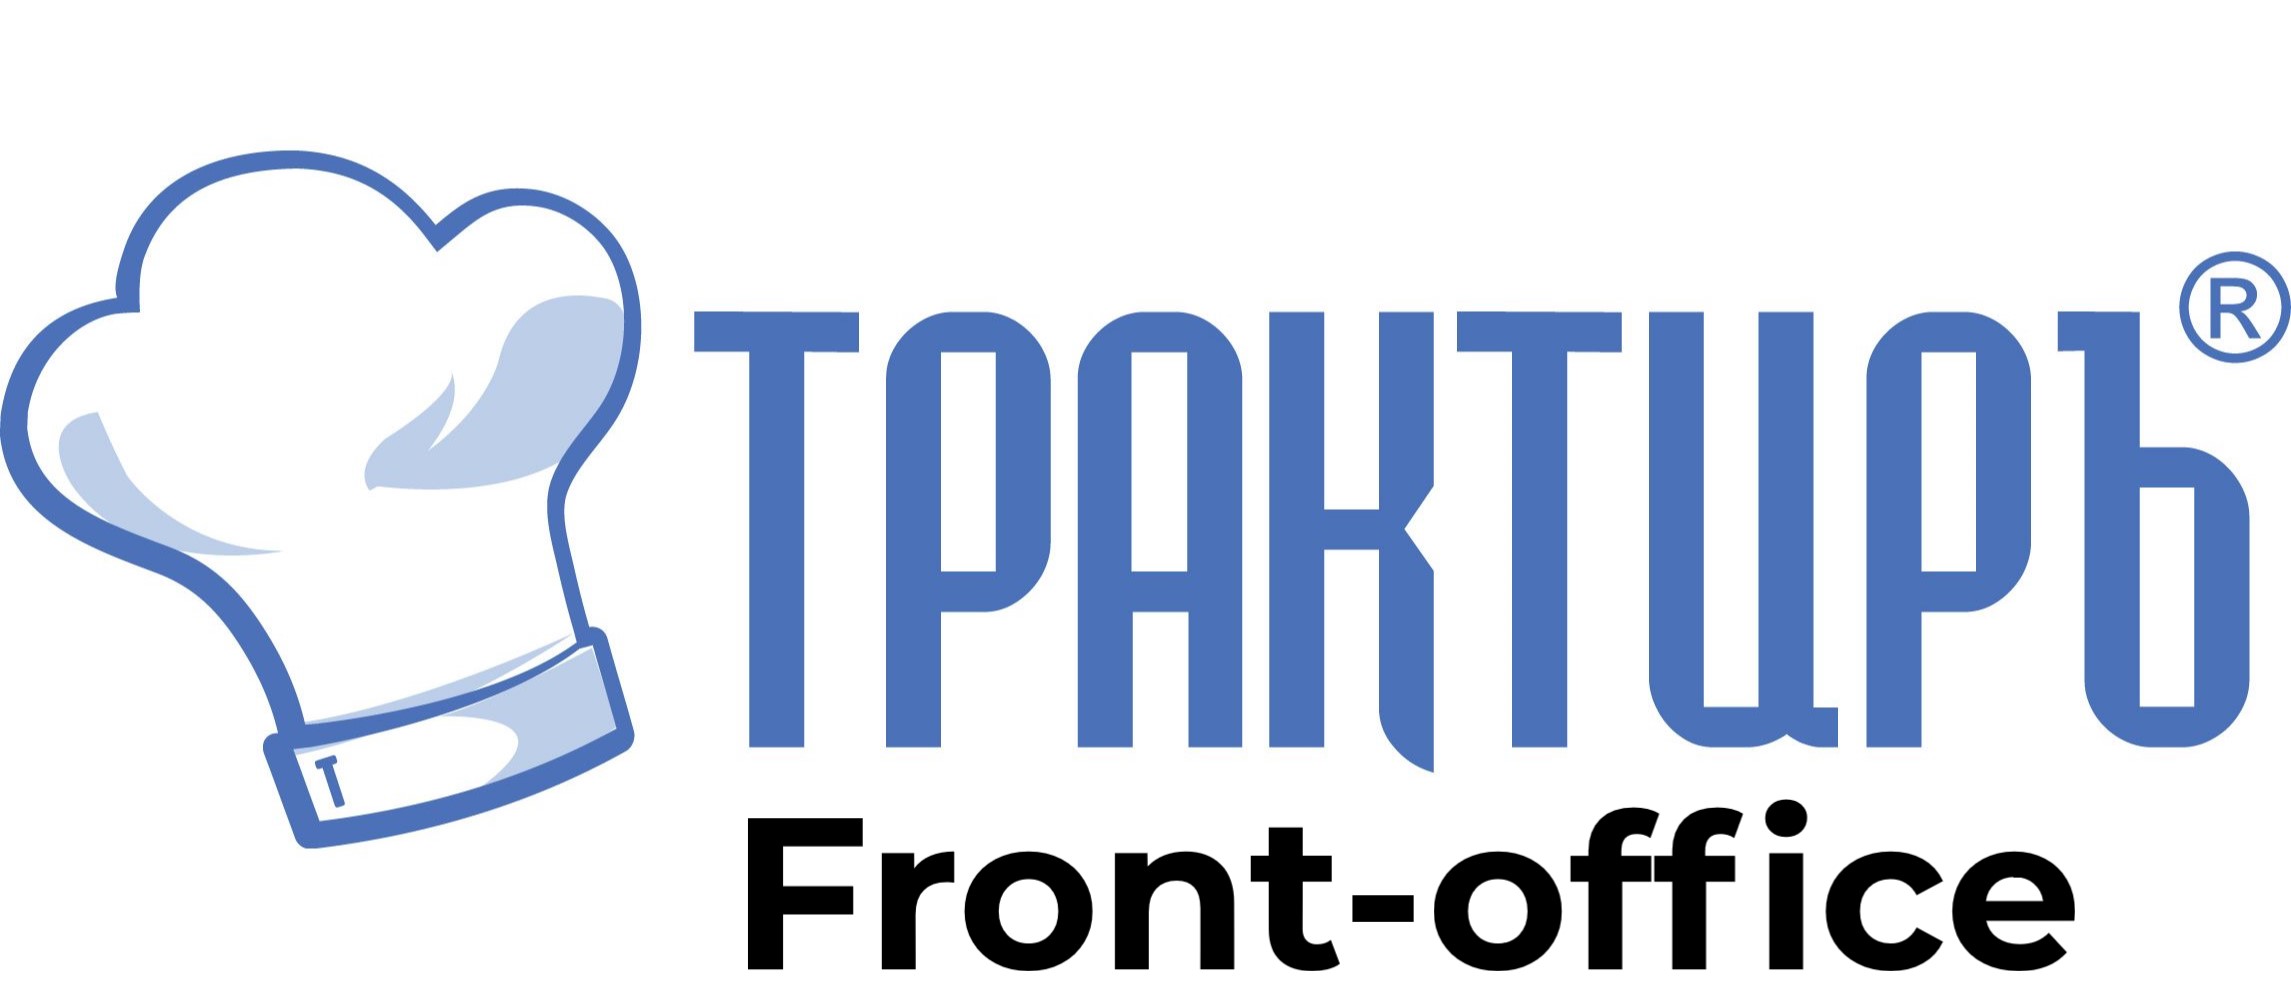 Трактиръ: Front-Office v4.5  Основная поставка в Подольске